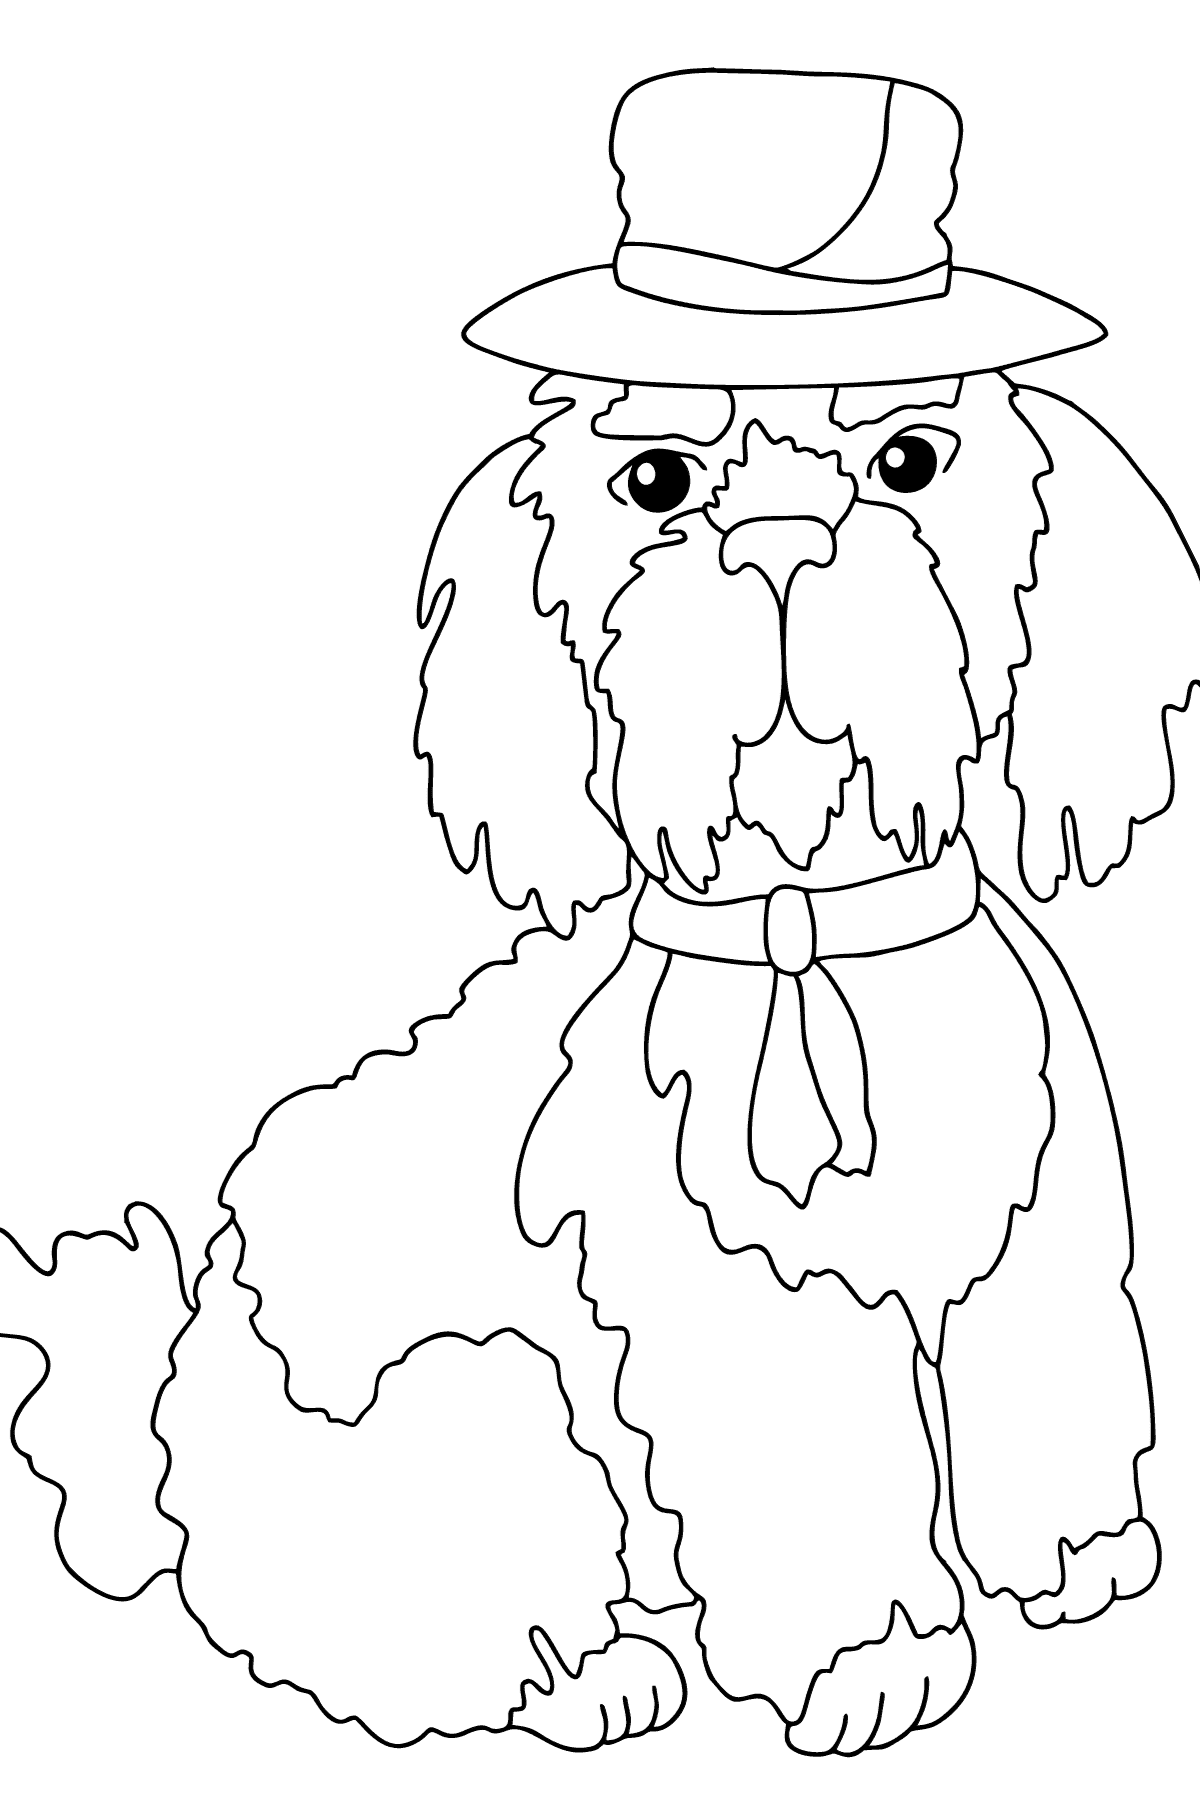 Ausmalbild Hund mit schickem Hut - Malvorlagen für Kinder